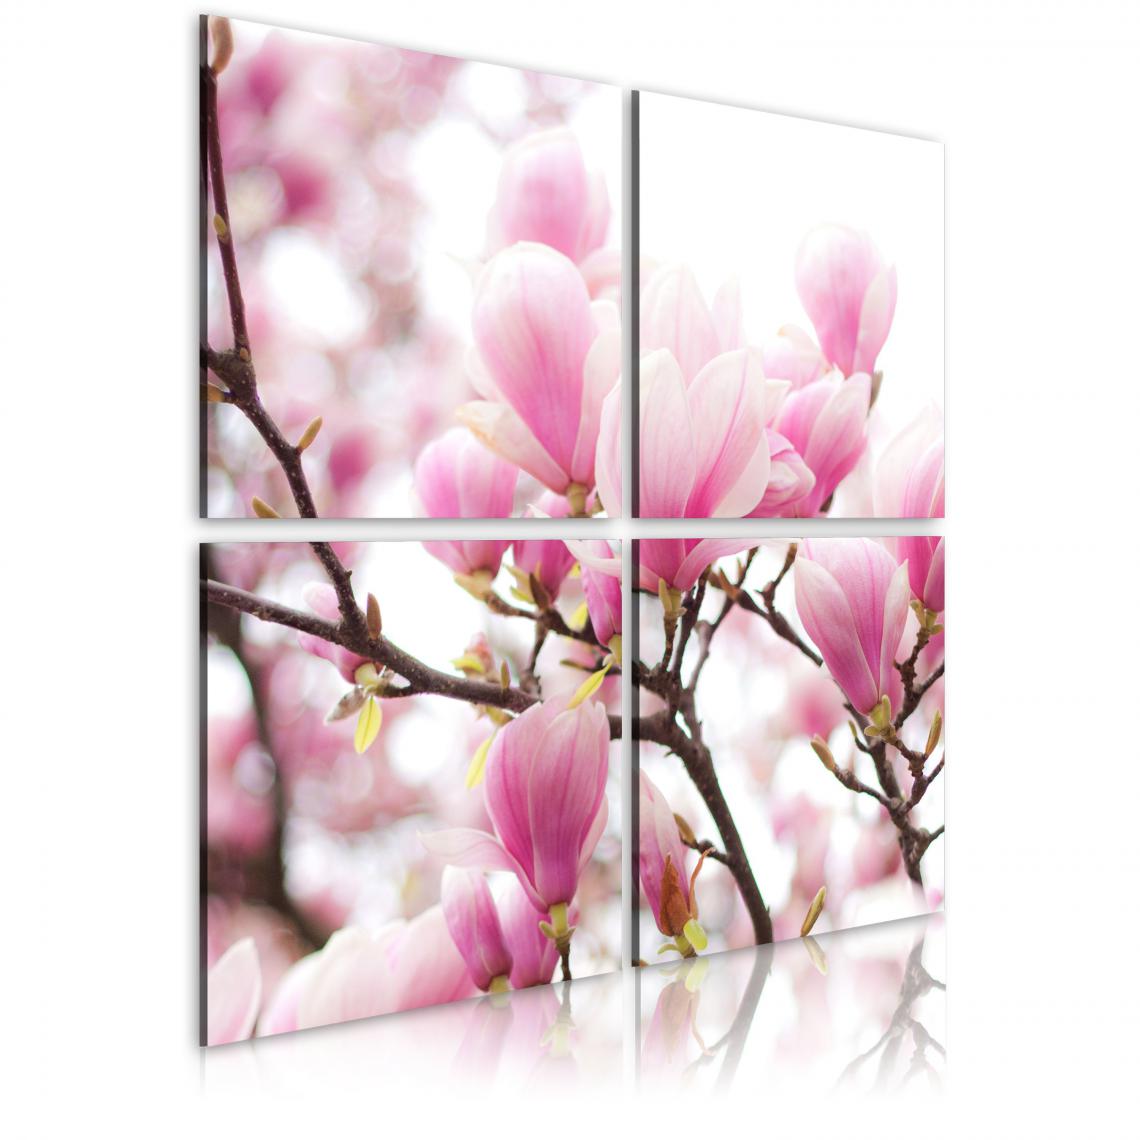 Decoshop26 - Tableau sur toile en 4 panneaux décoration murale image imprimée cadre en bois à suspendre Magnolia fleurissante 40x40 cm 11_0005418 - Tableaux, peintures